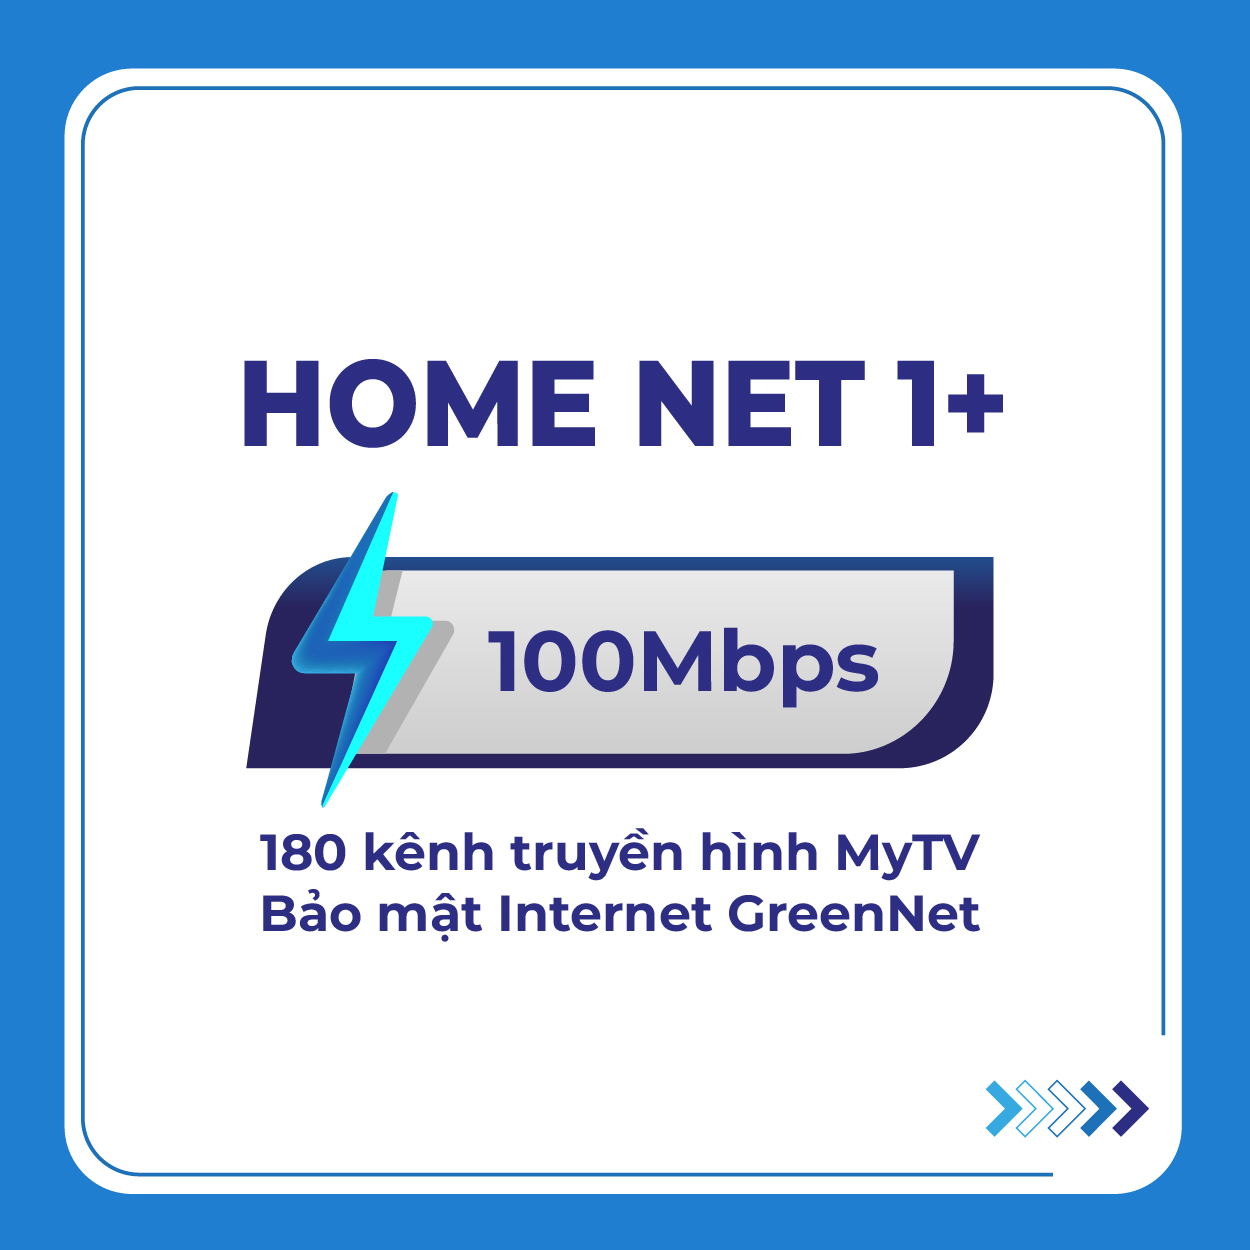 HOME NET 1+_NgT